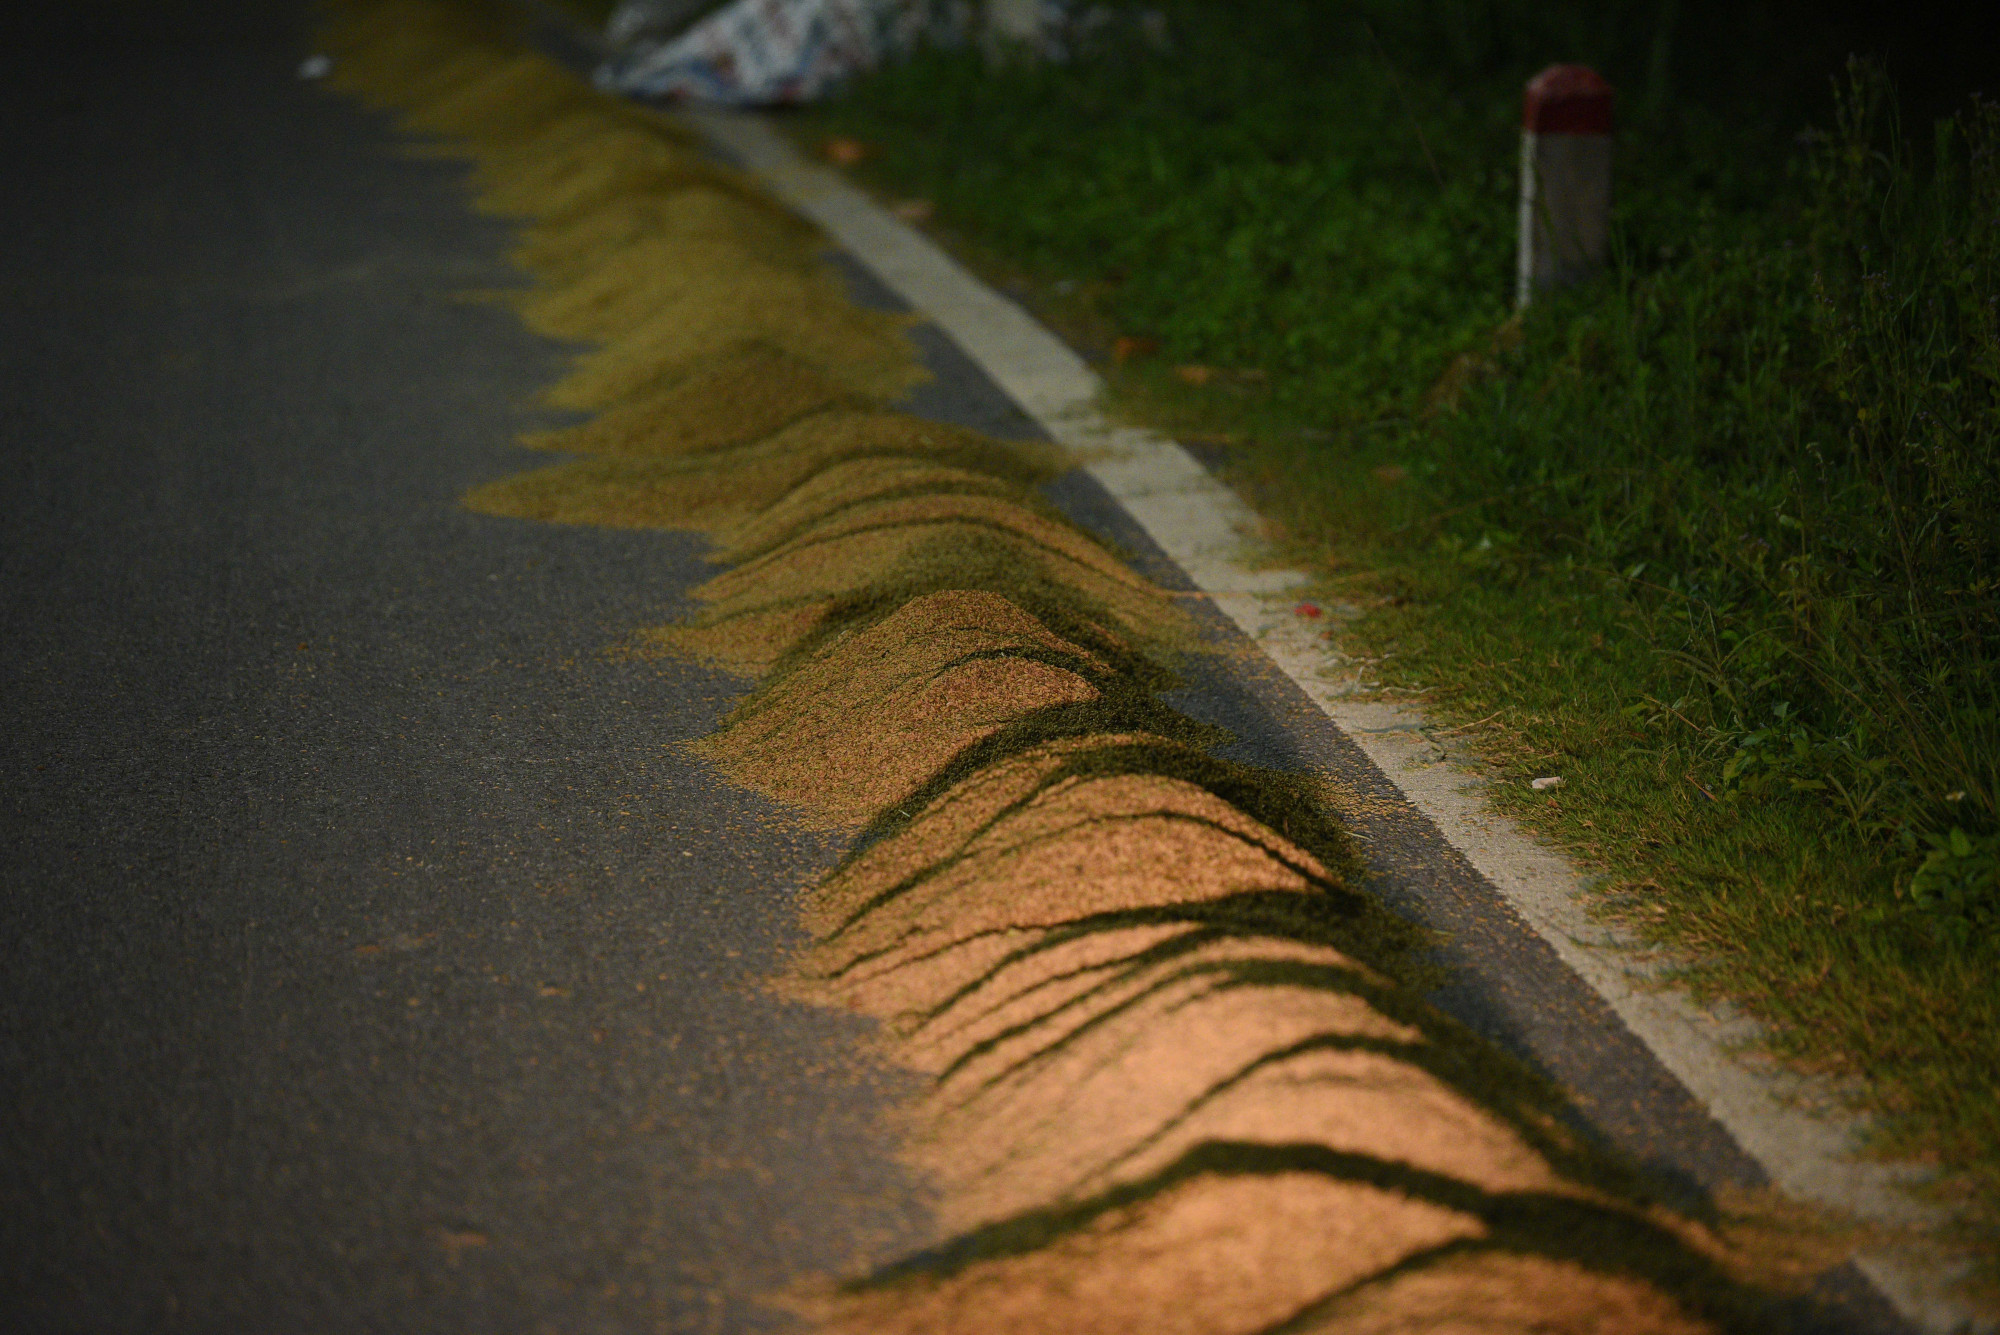 Tại tuyến đường, nhiều điểm lúa chỉ được thu gọn, không được che đậy.